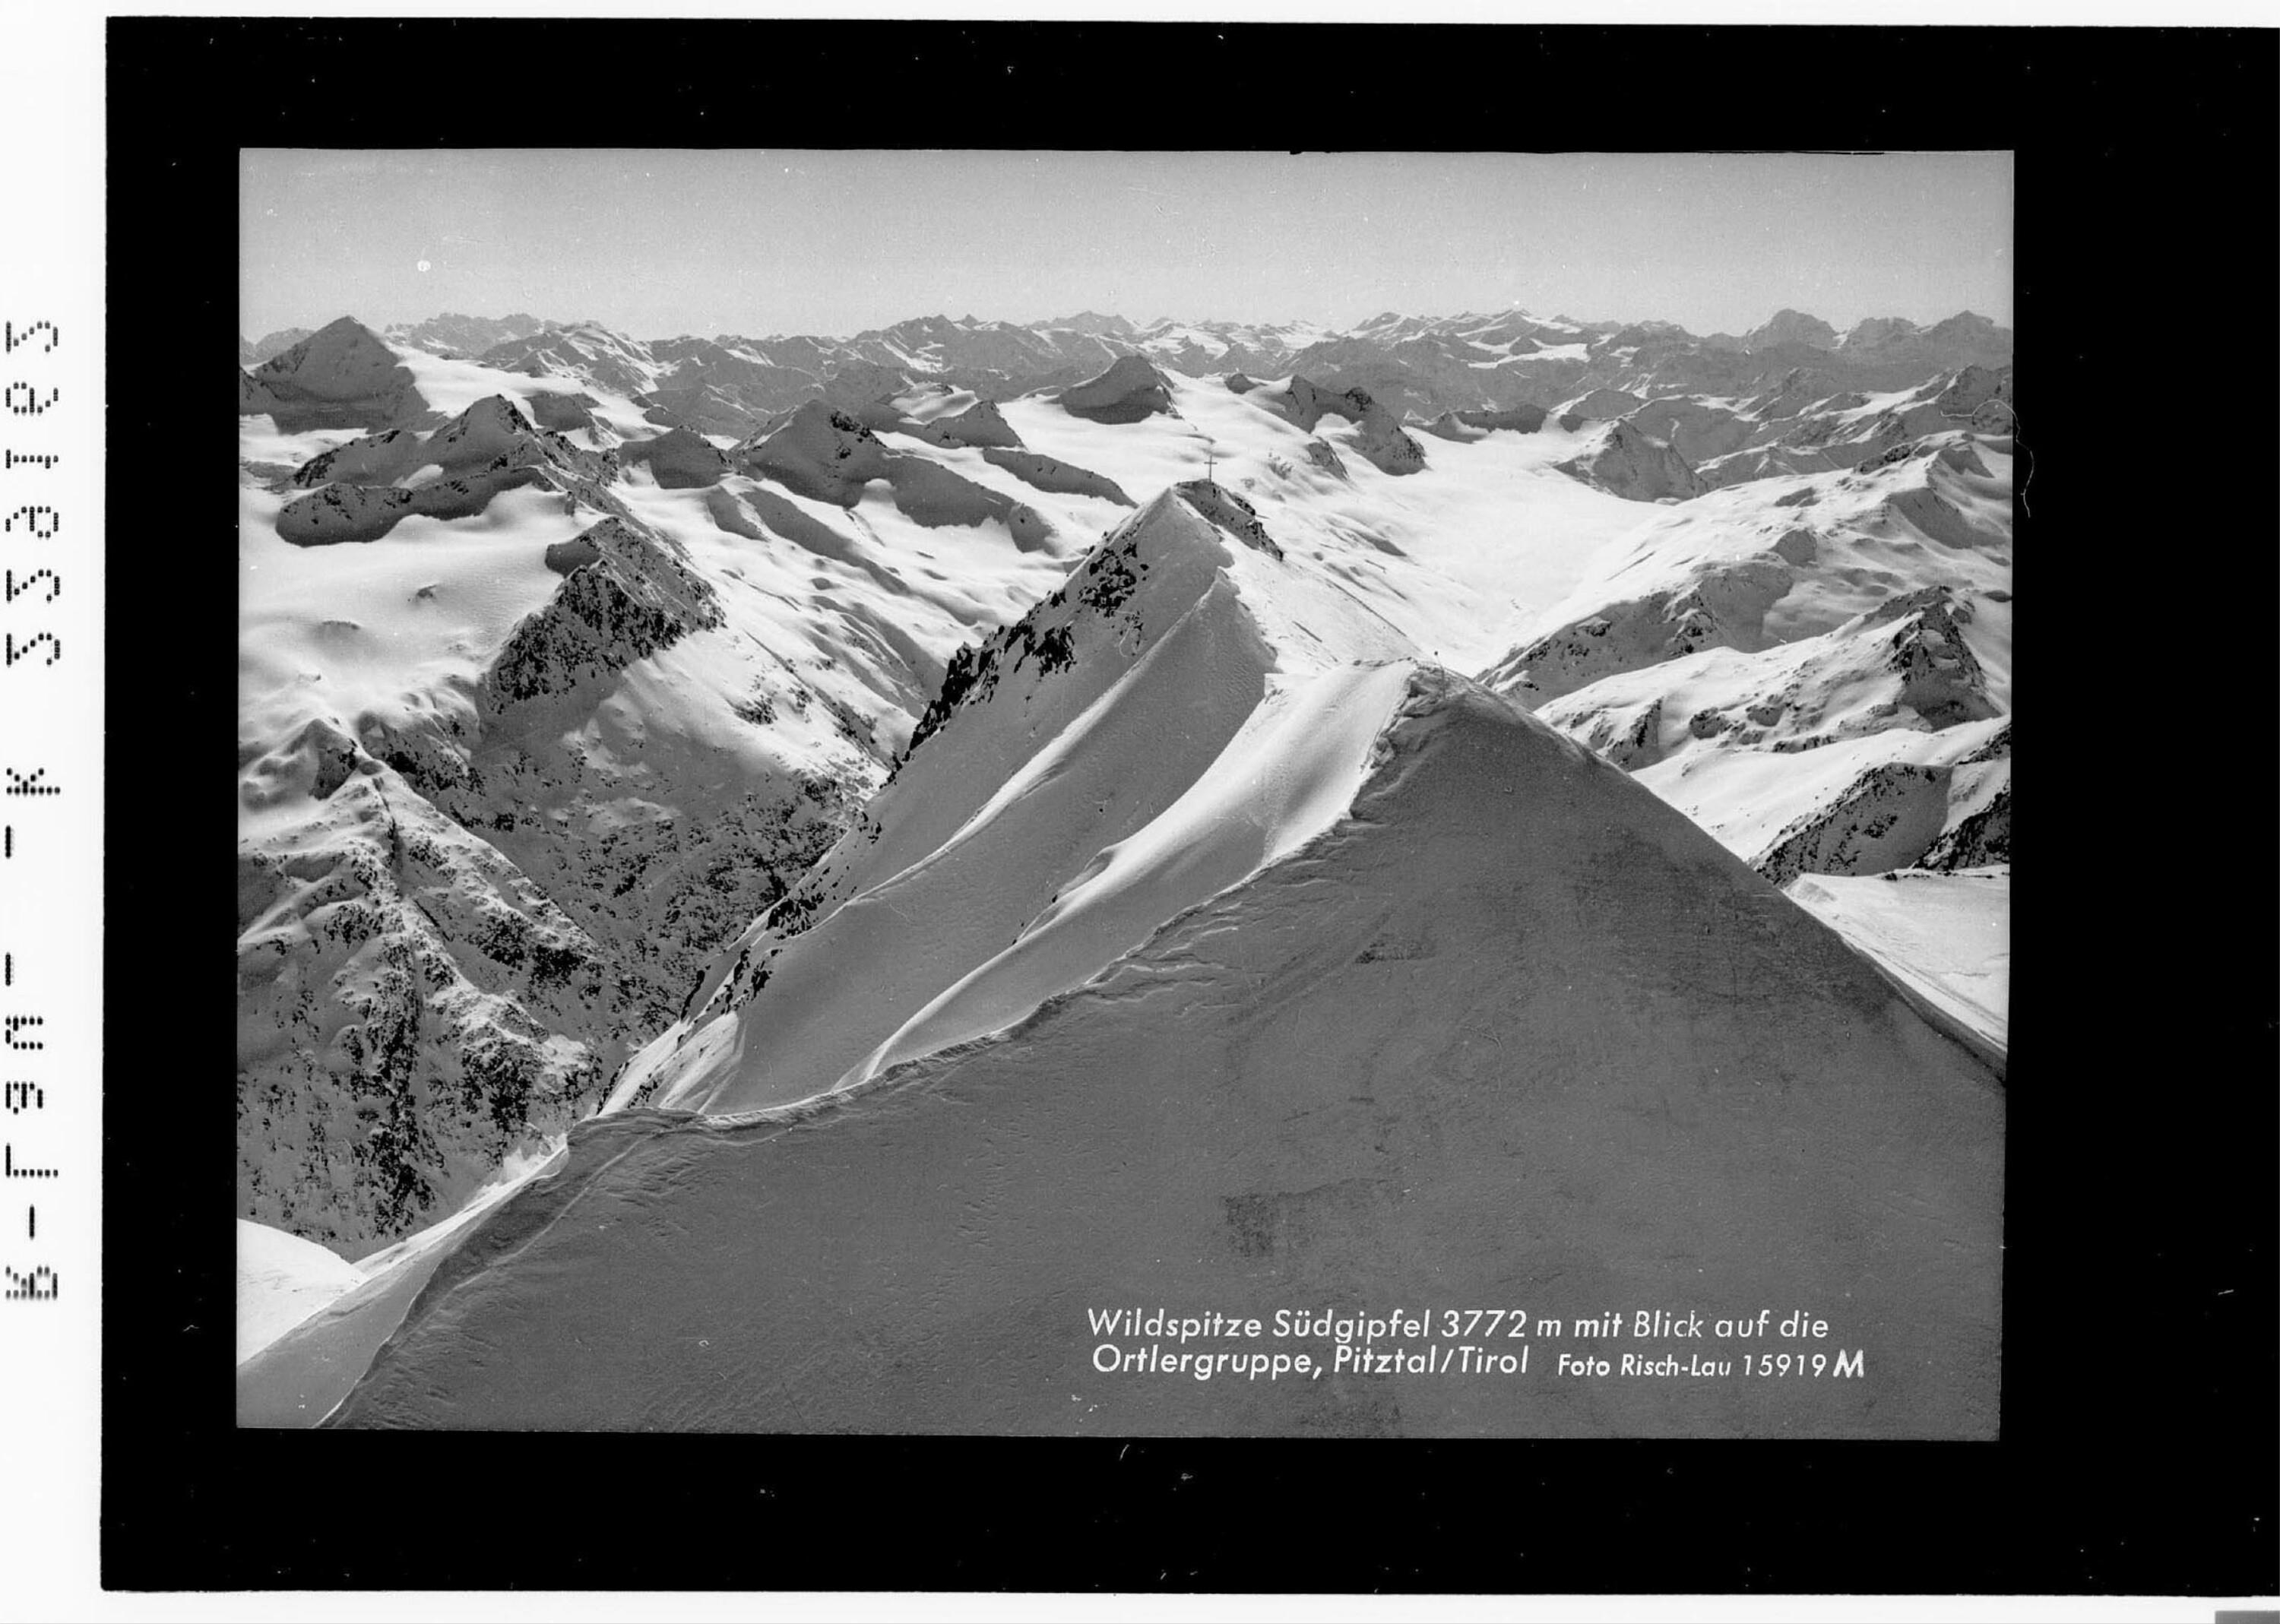 Wildspitze Südgipfel 3772 m mit Blick auf die Ortlergruppe / Pitztal / Tirol></div>


    <hr>
    <div class=